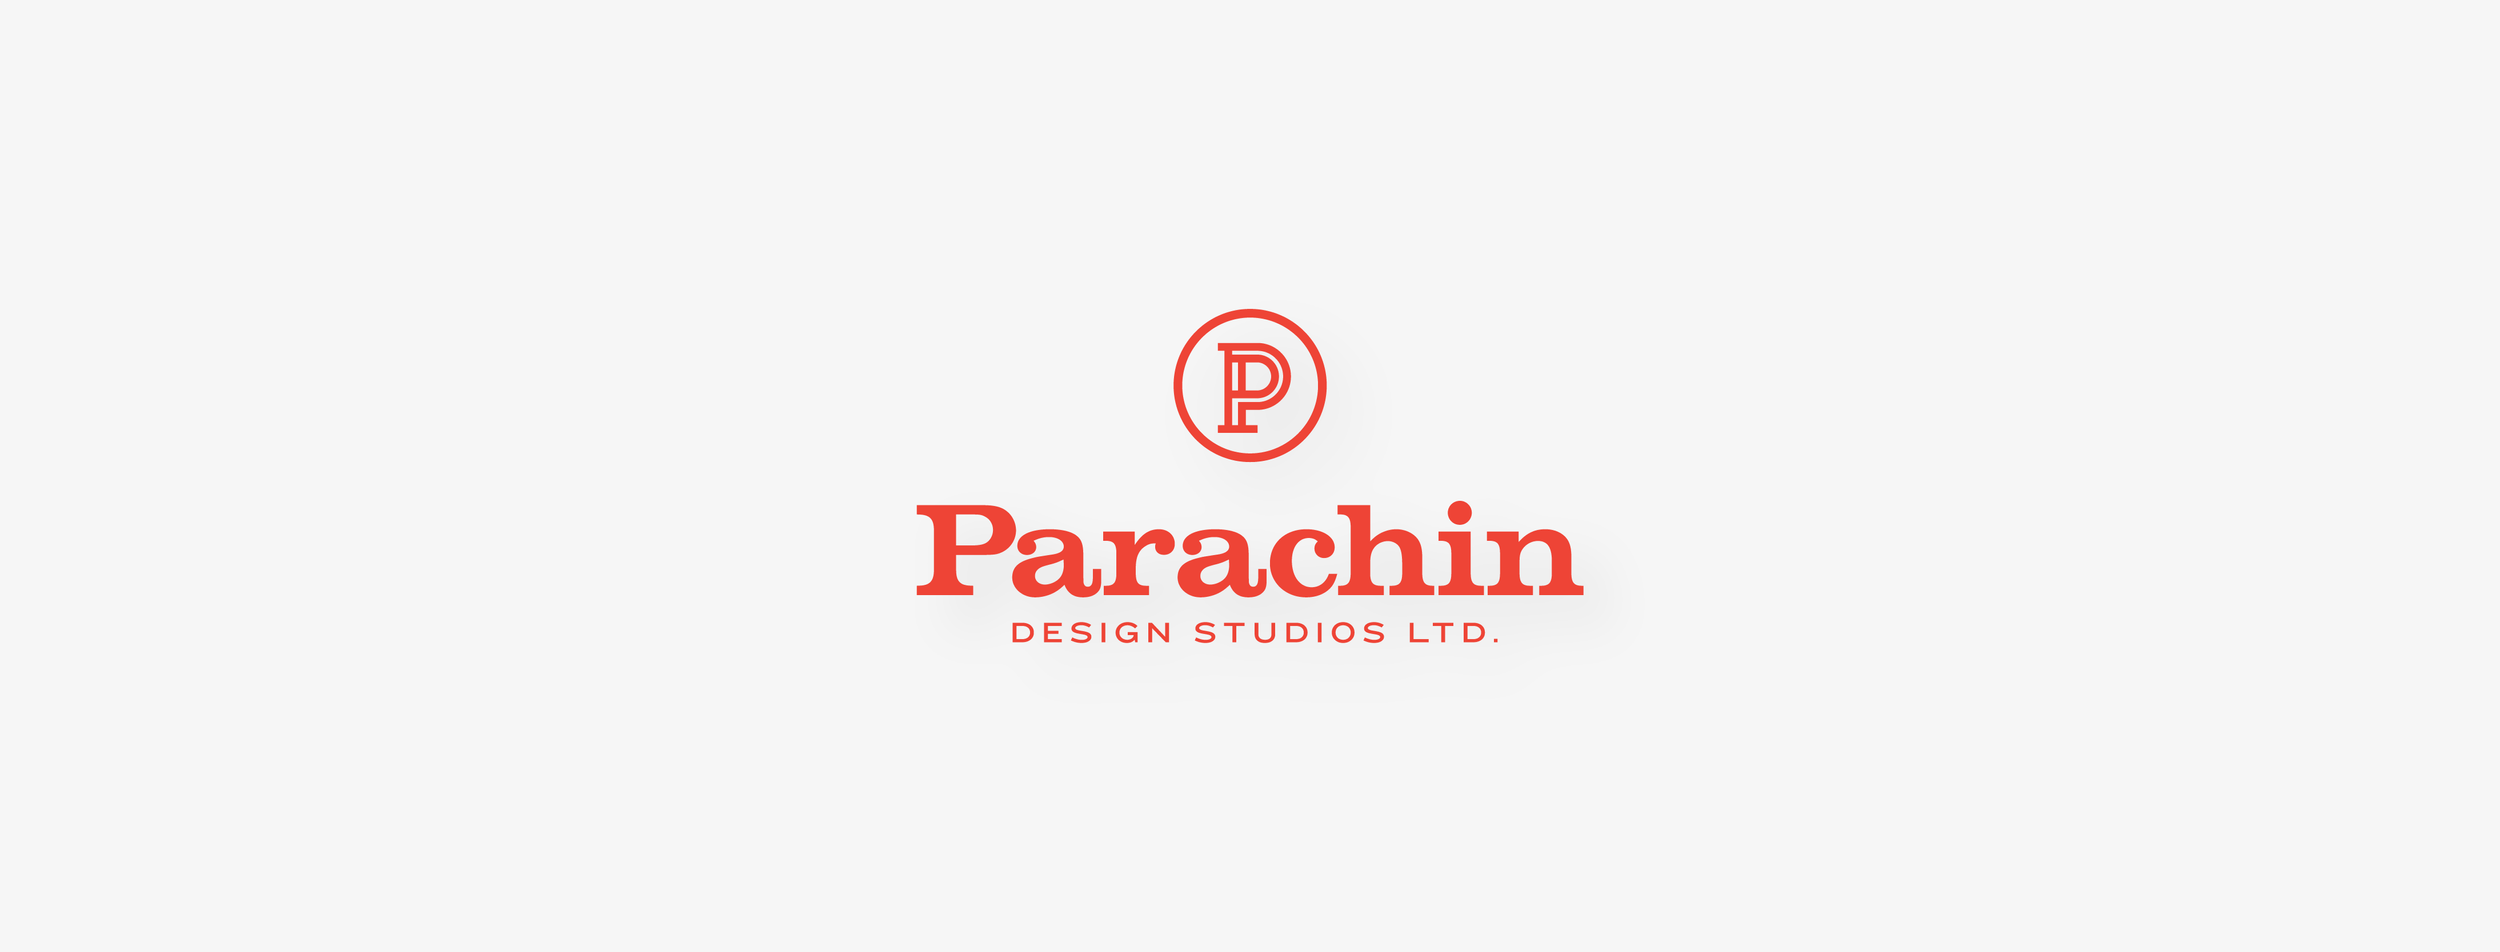 Parachin Design Studios